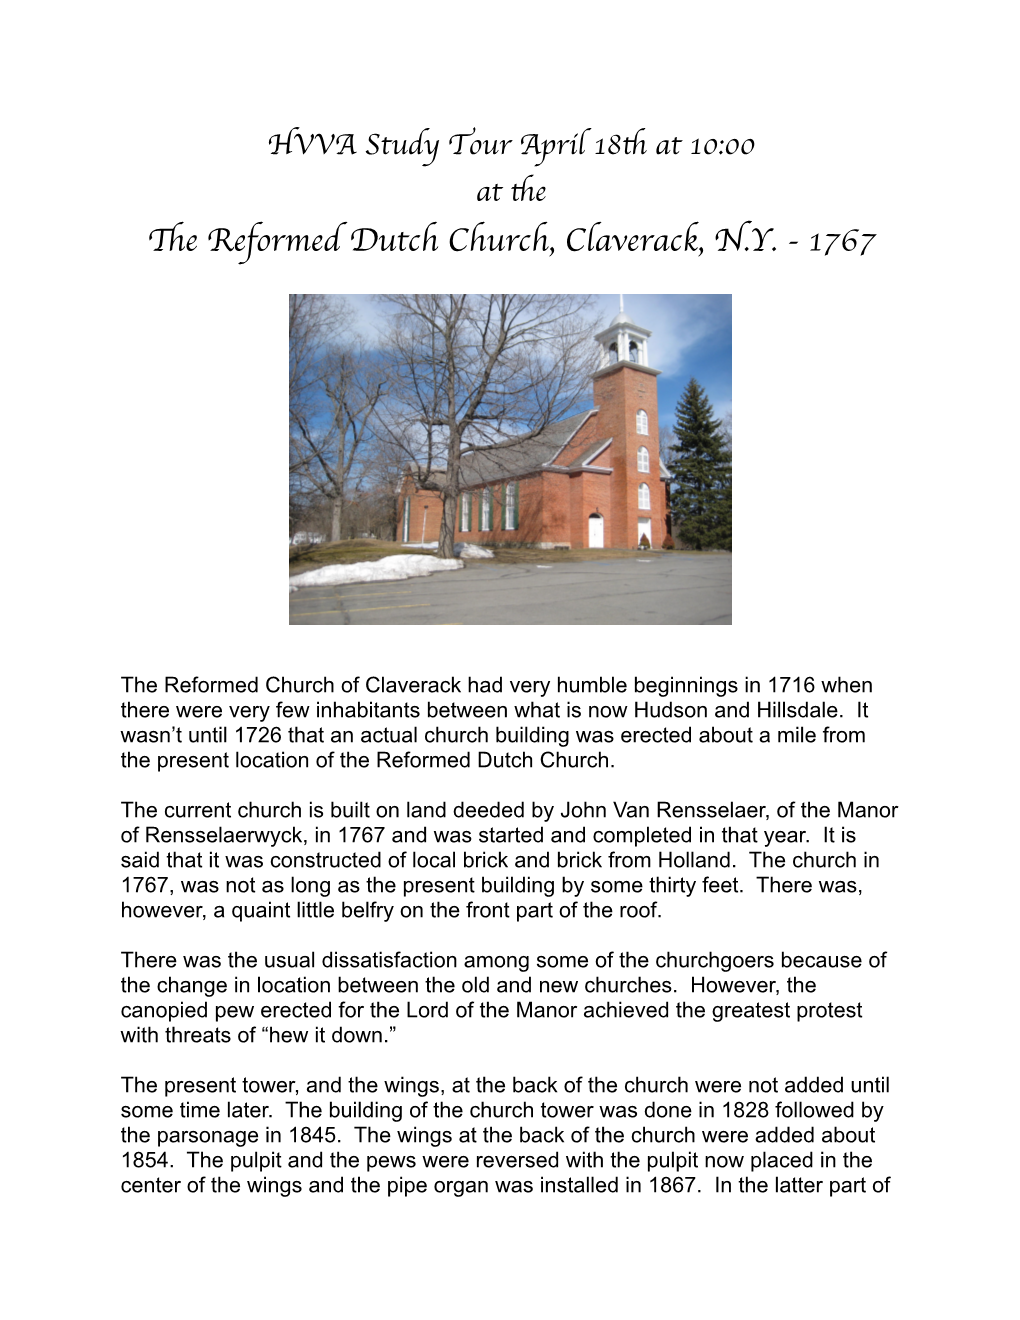 The Reformed Dutch Church, Claverack, N.Y